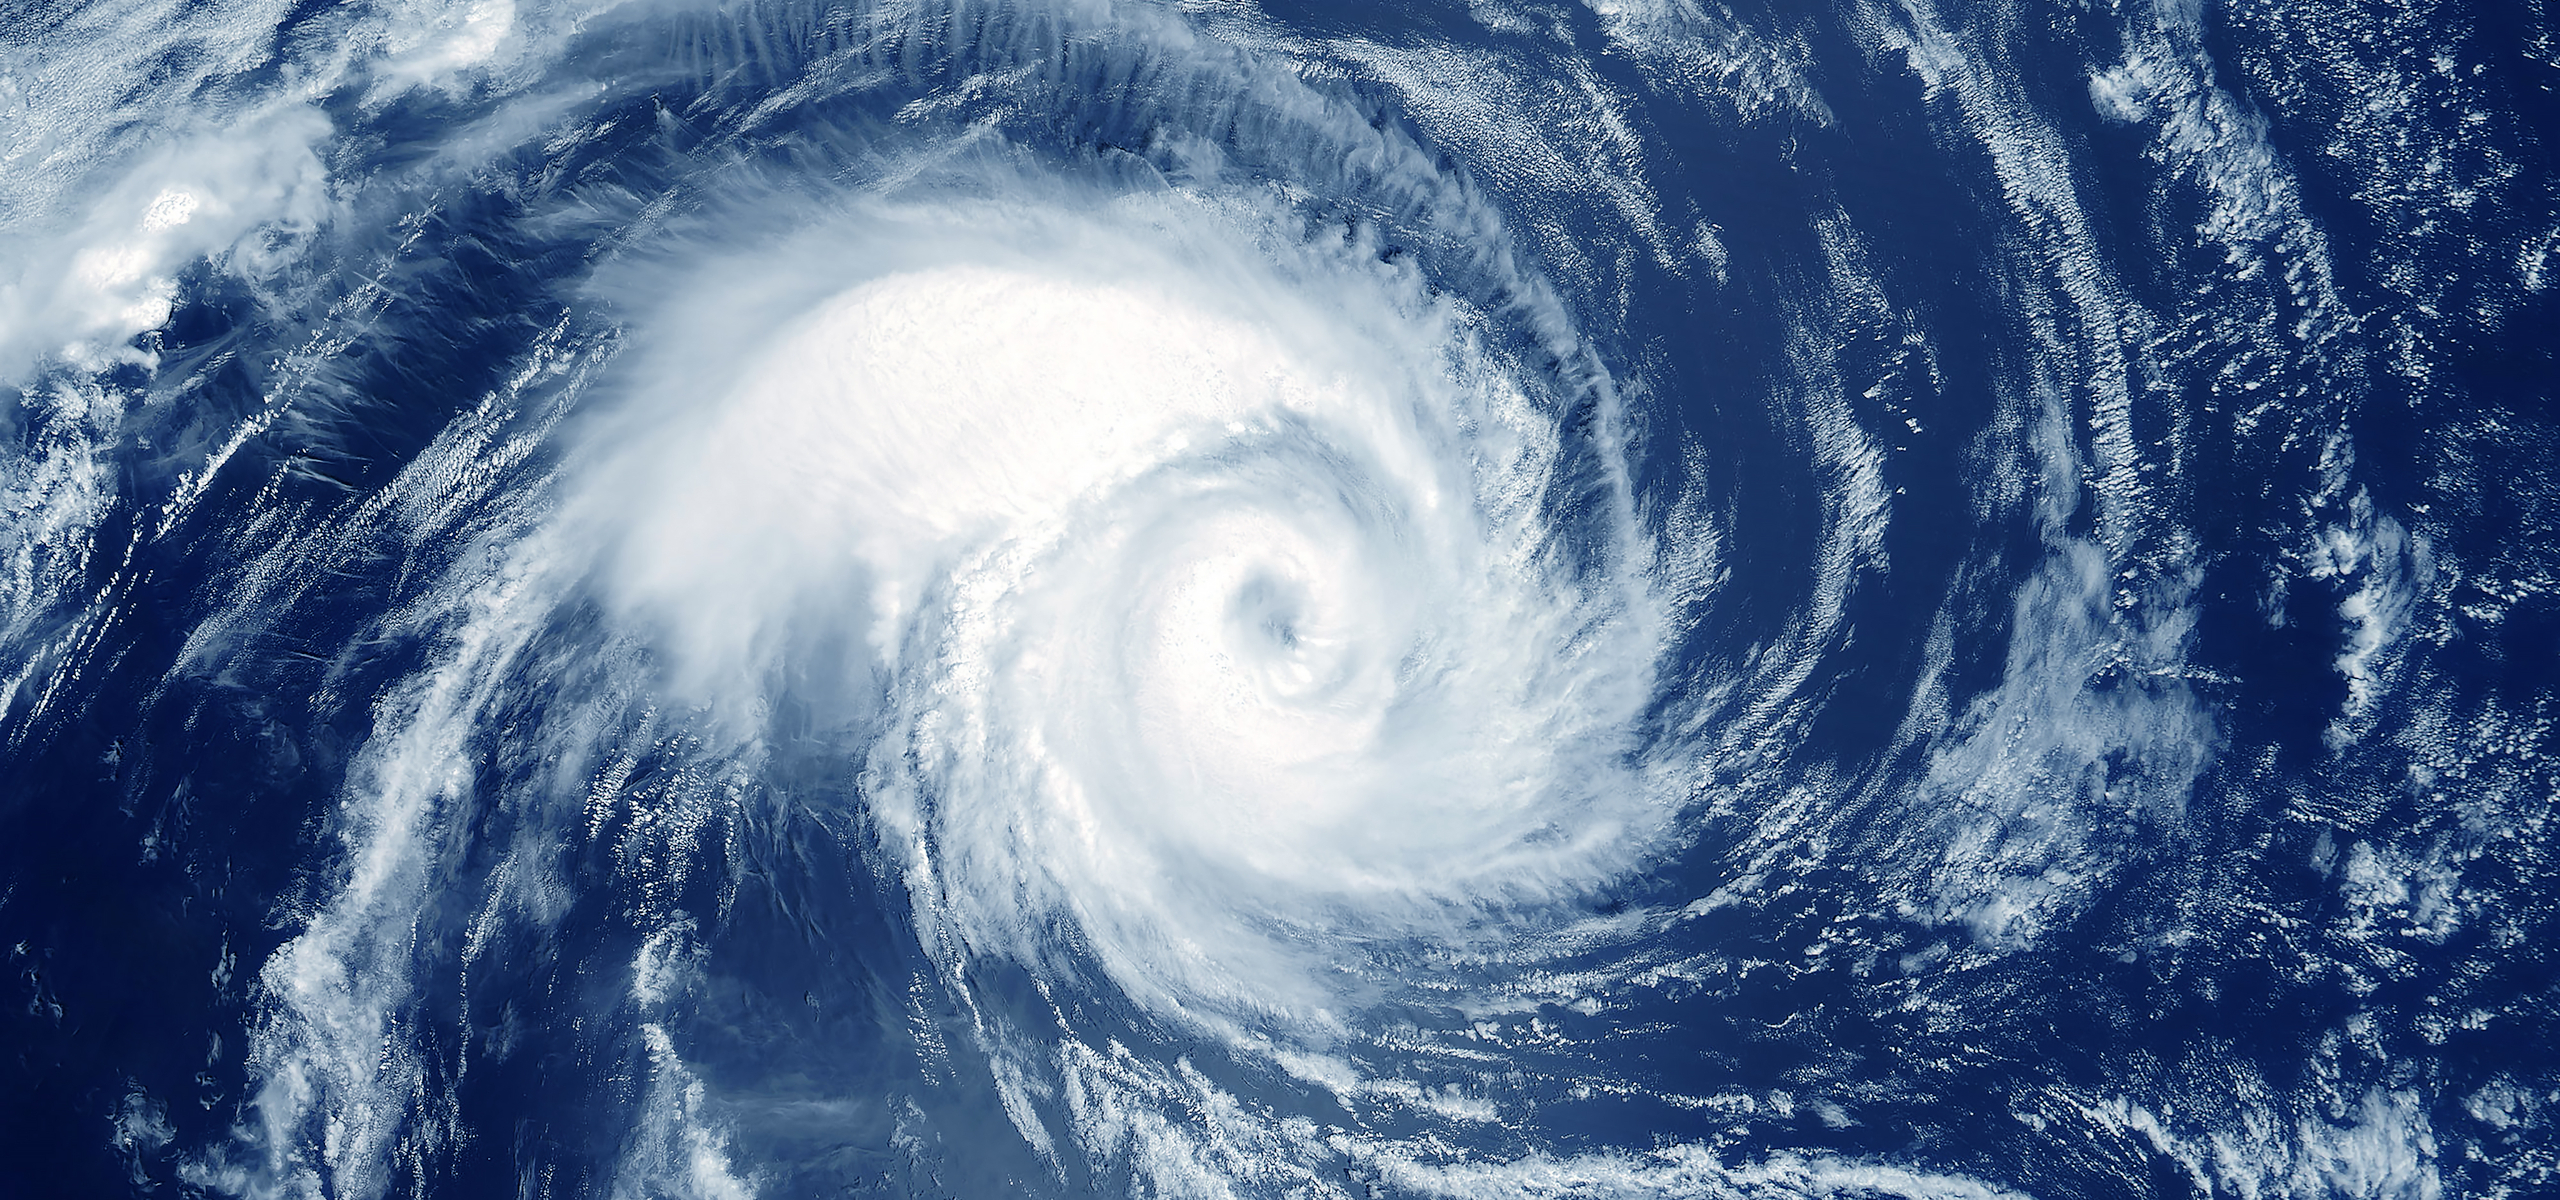 Vista aérea de un huracán que se forma en el océano